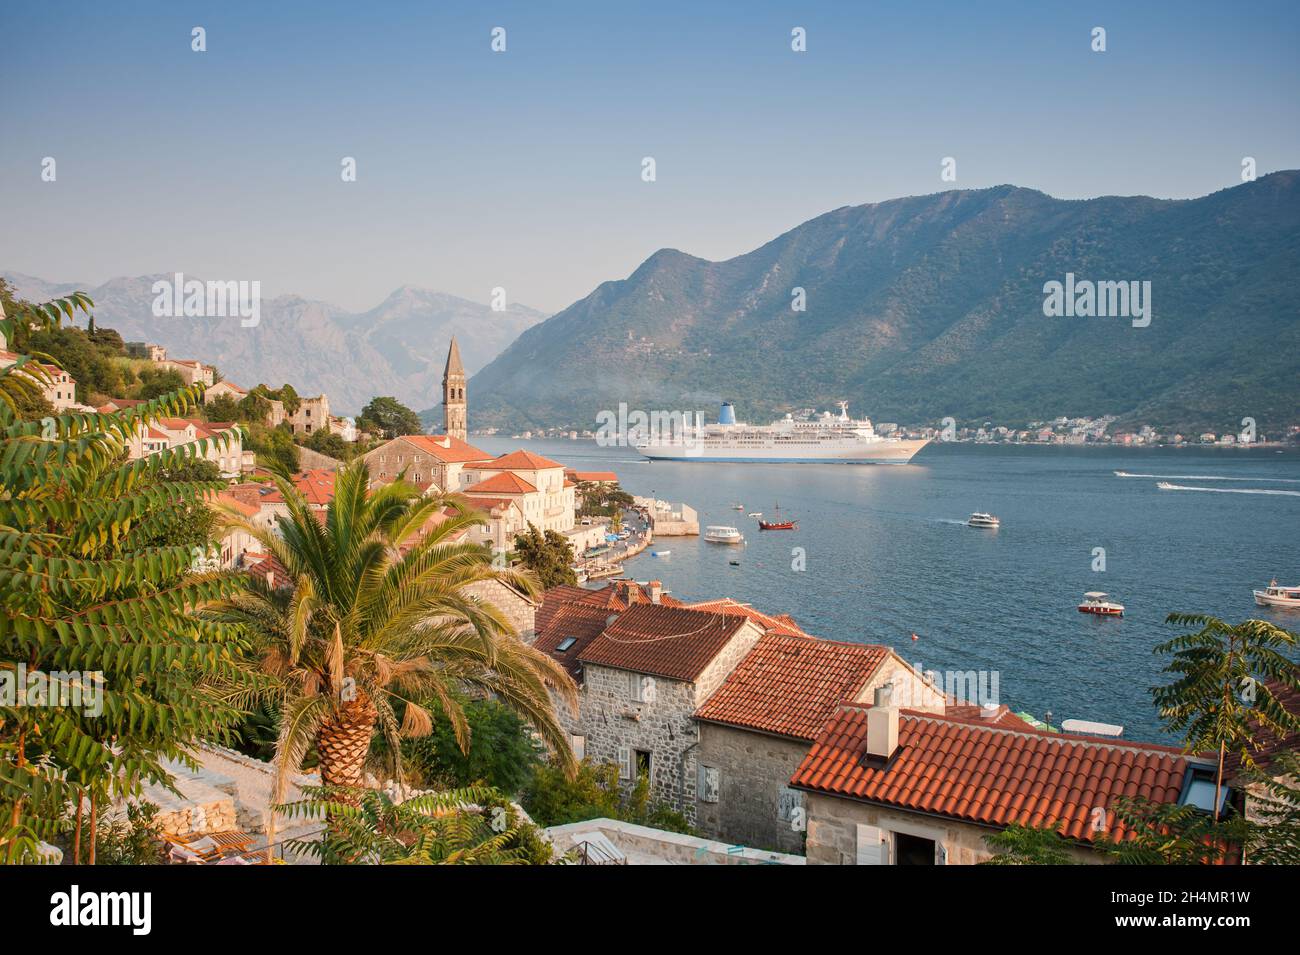 Traditionelle adriatische Landschaft: Alte Architektur, schönes Meer und Berge. Perast, Montenegro Stockfoto